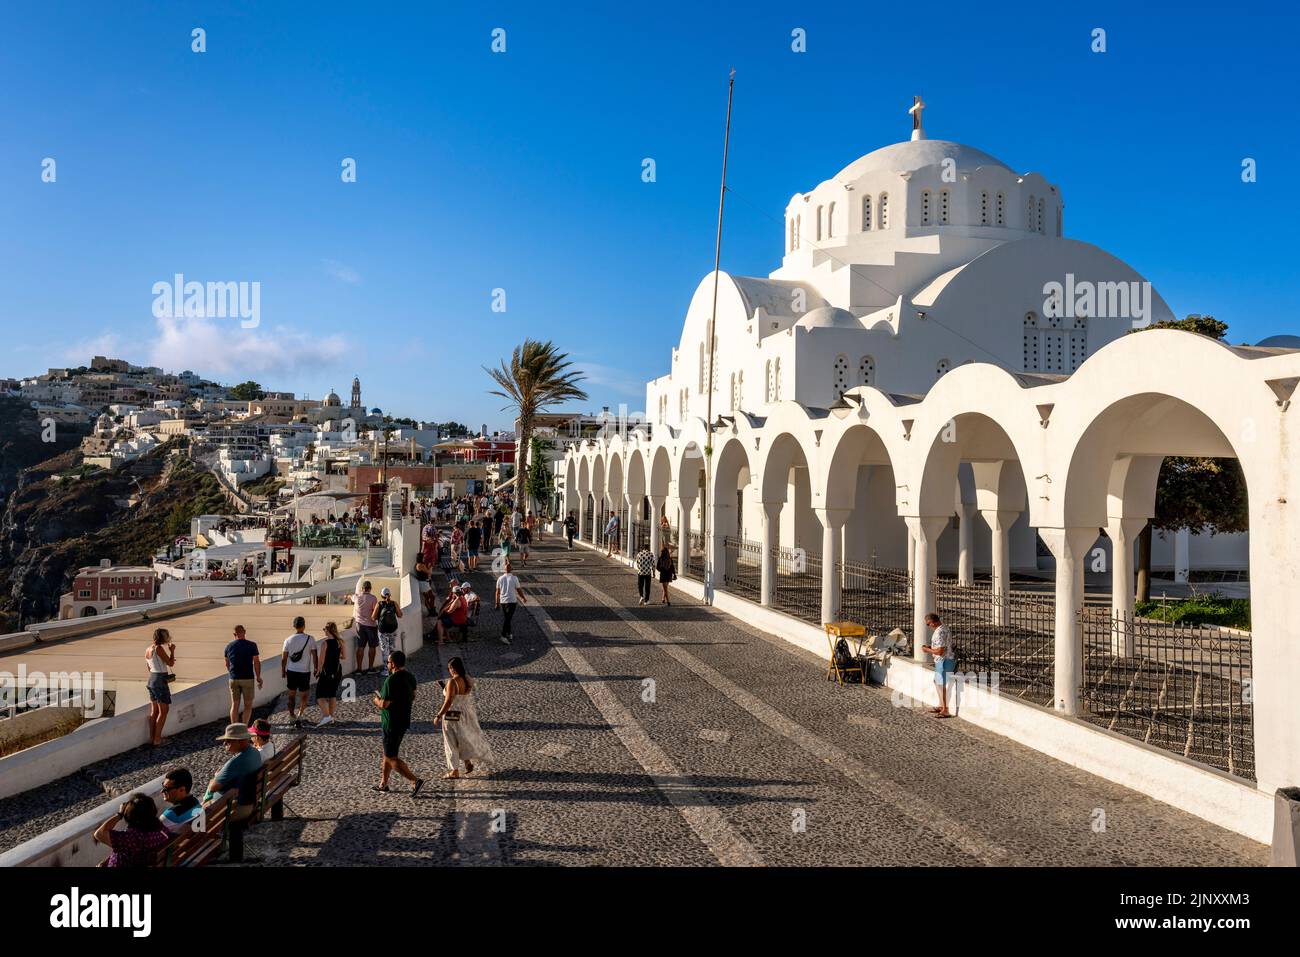 Église/Cathédrale Sainte-orthodoxe de Candlemas, Thira, Santorin, Iles grecques, Grèce. Banque D'Images